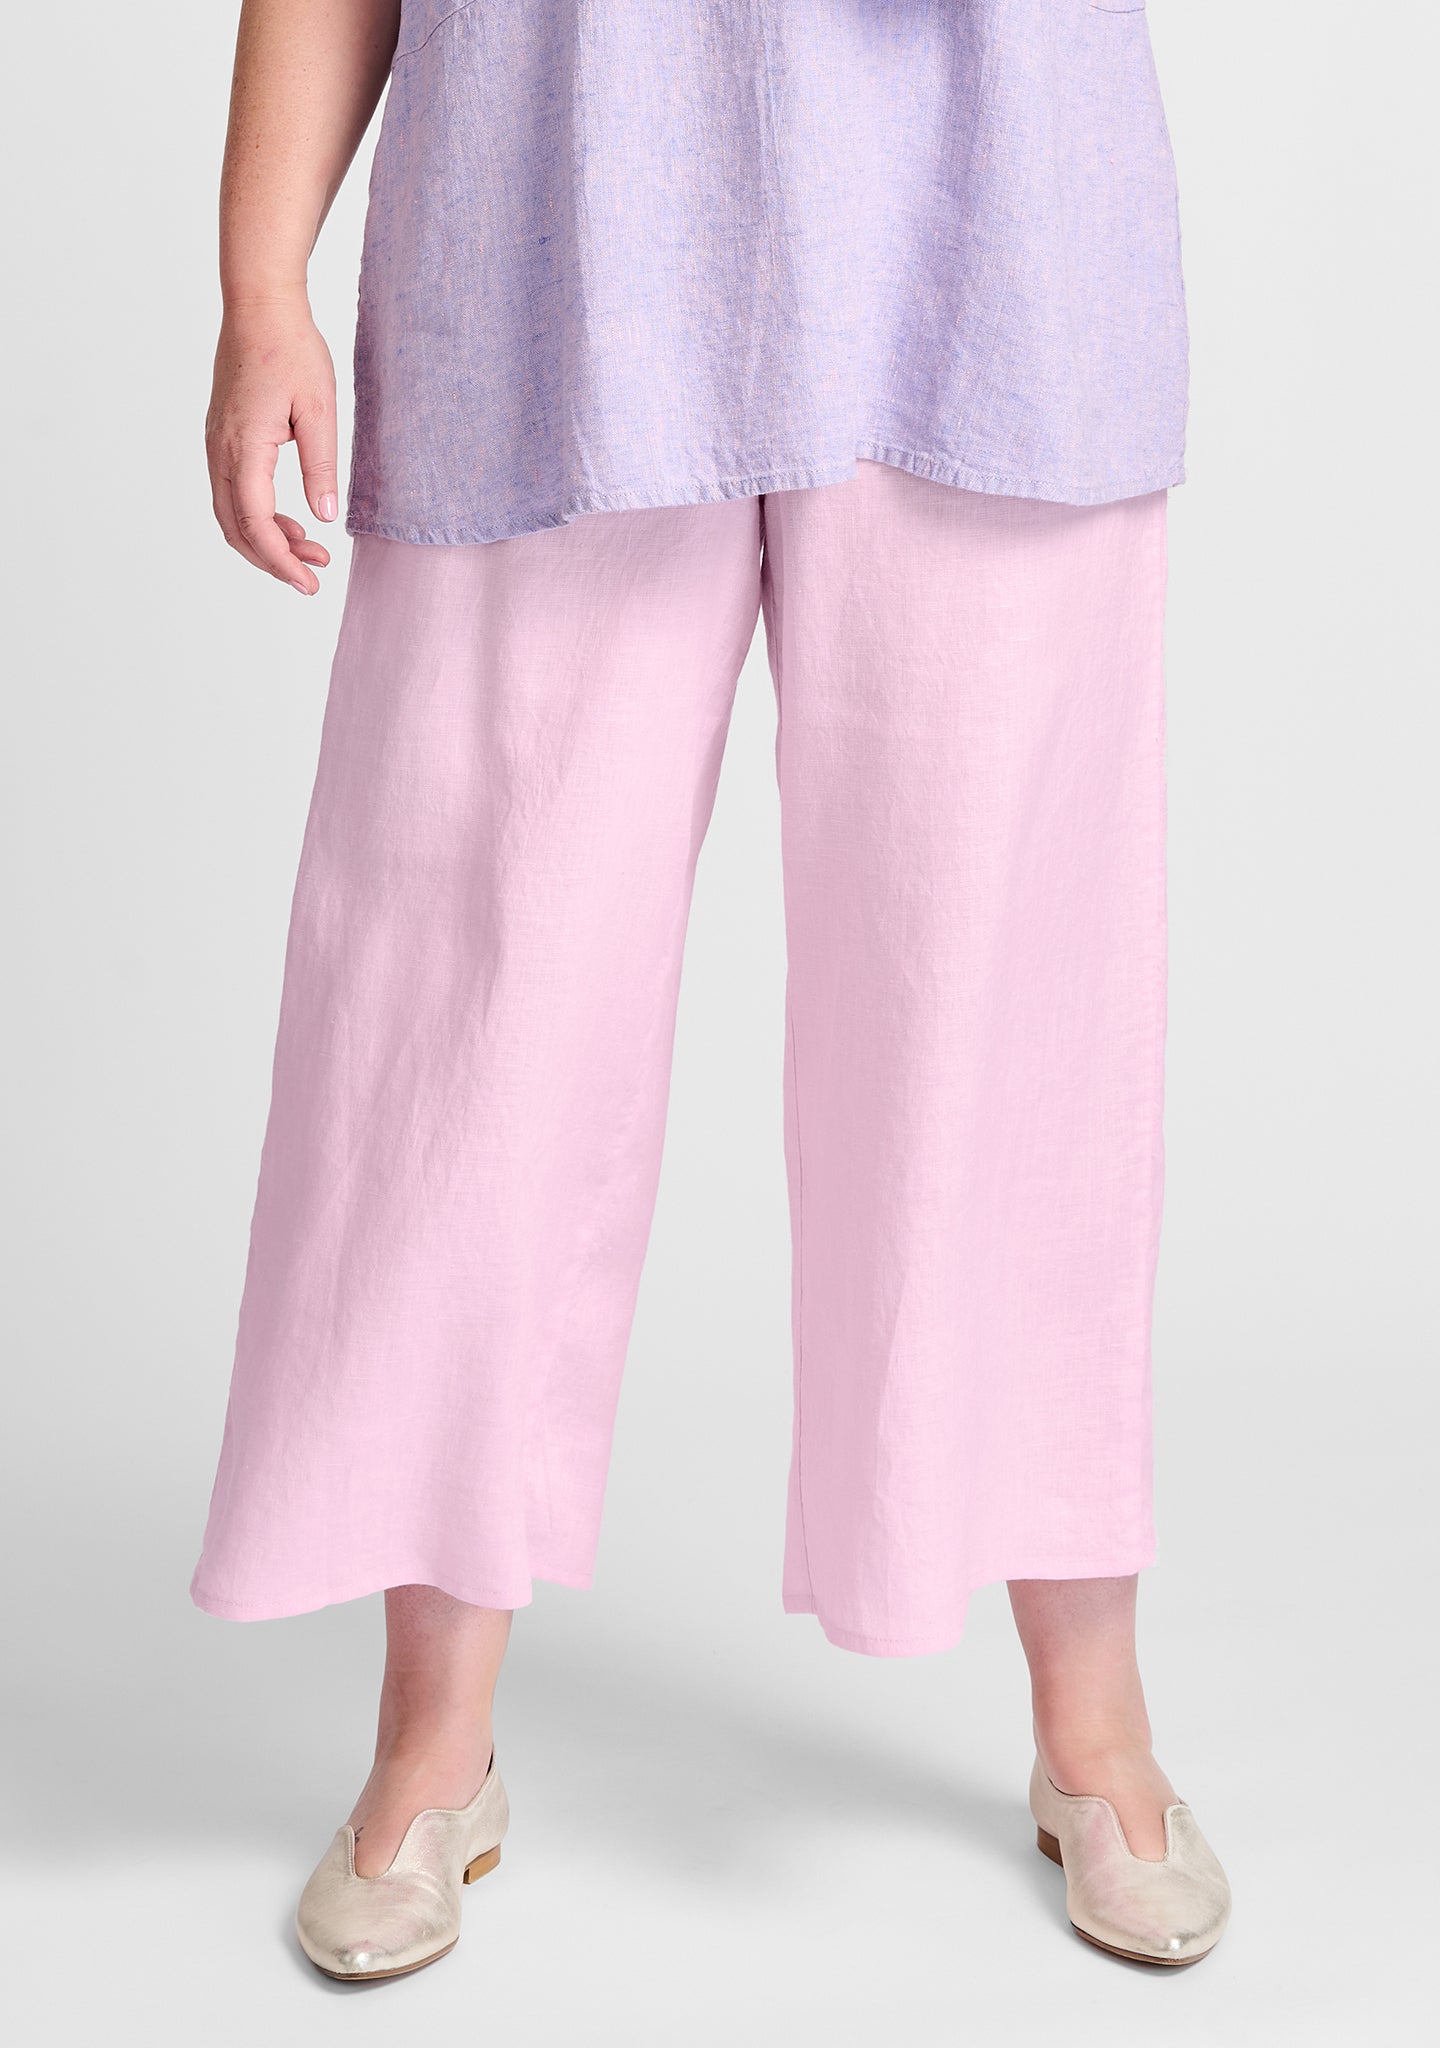 sociable flood wide leg linen pants pink